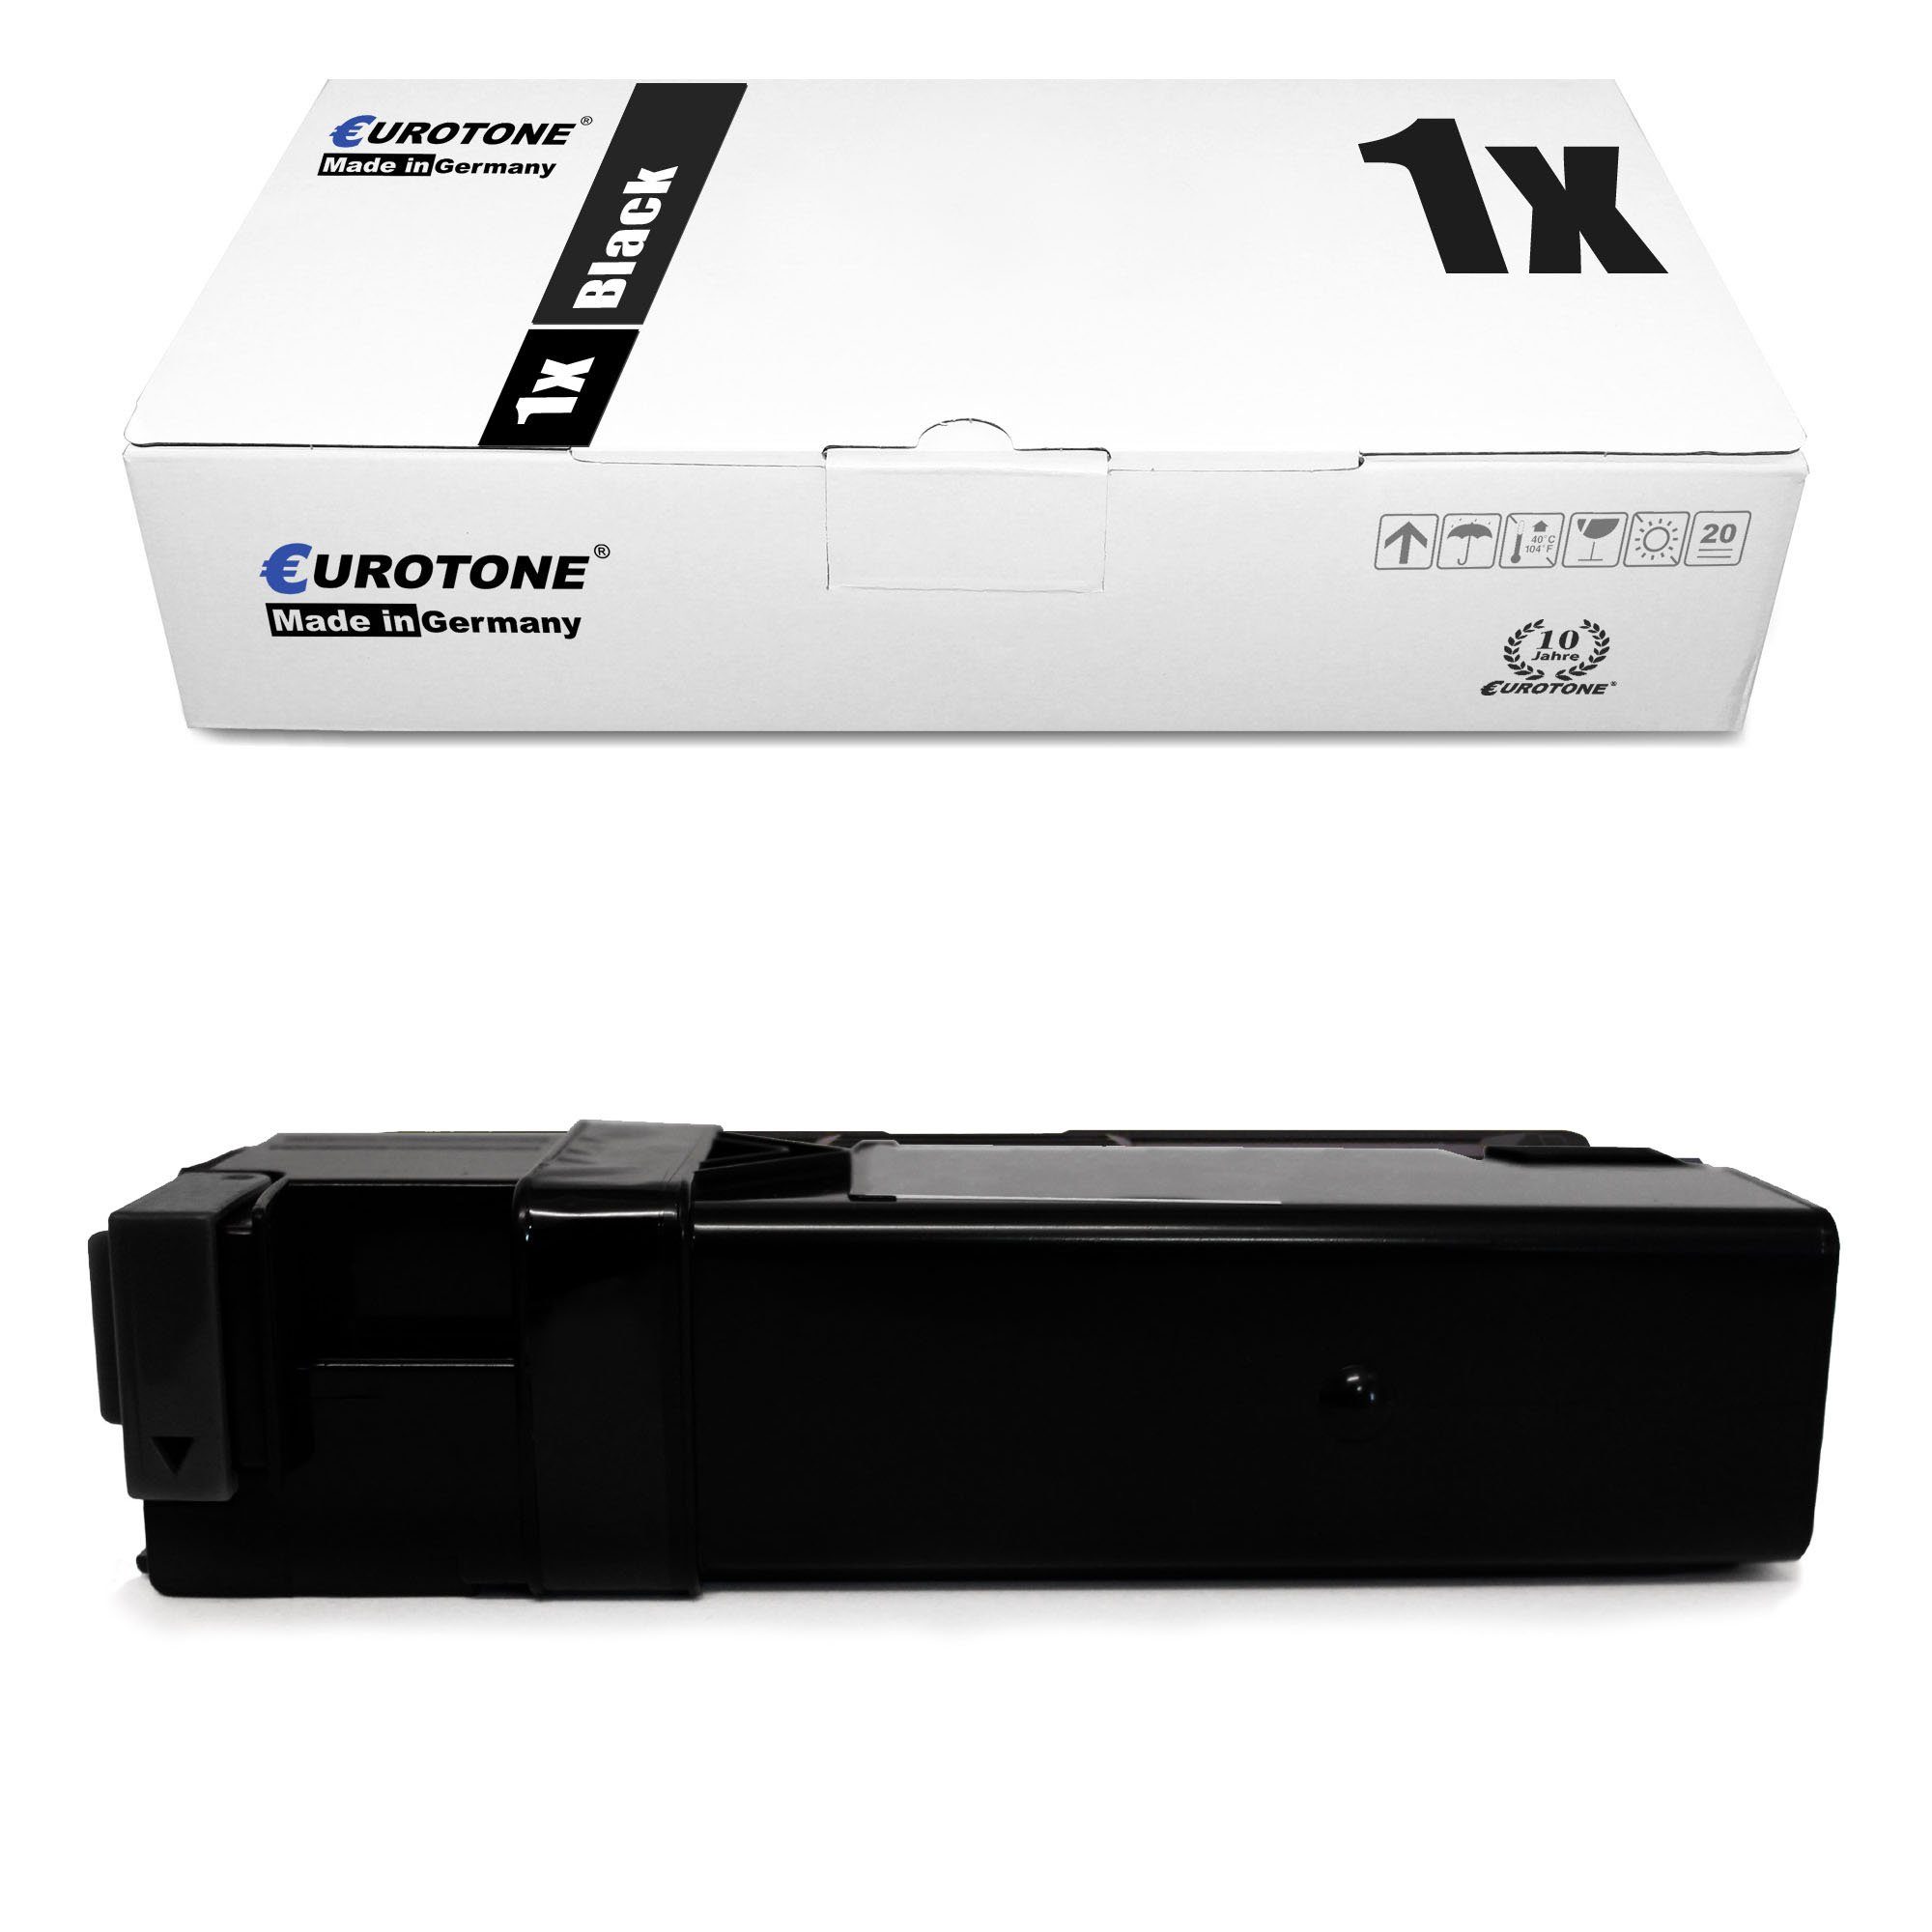 Eurotone Tonerkartusche Toner ersetzt Xerox 106R01597 Black